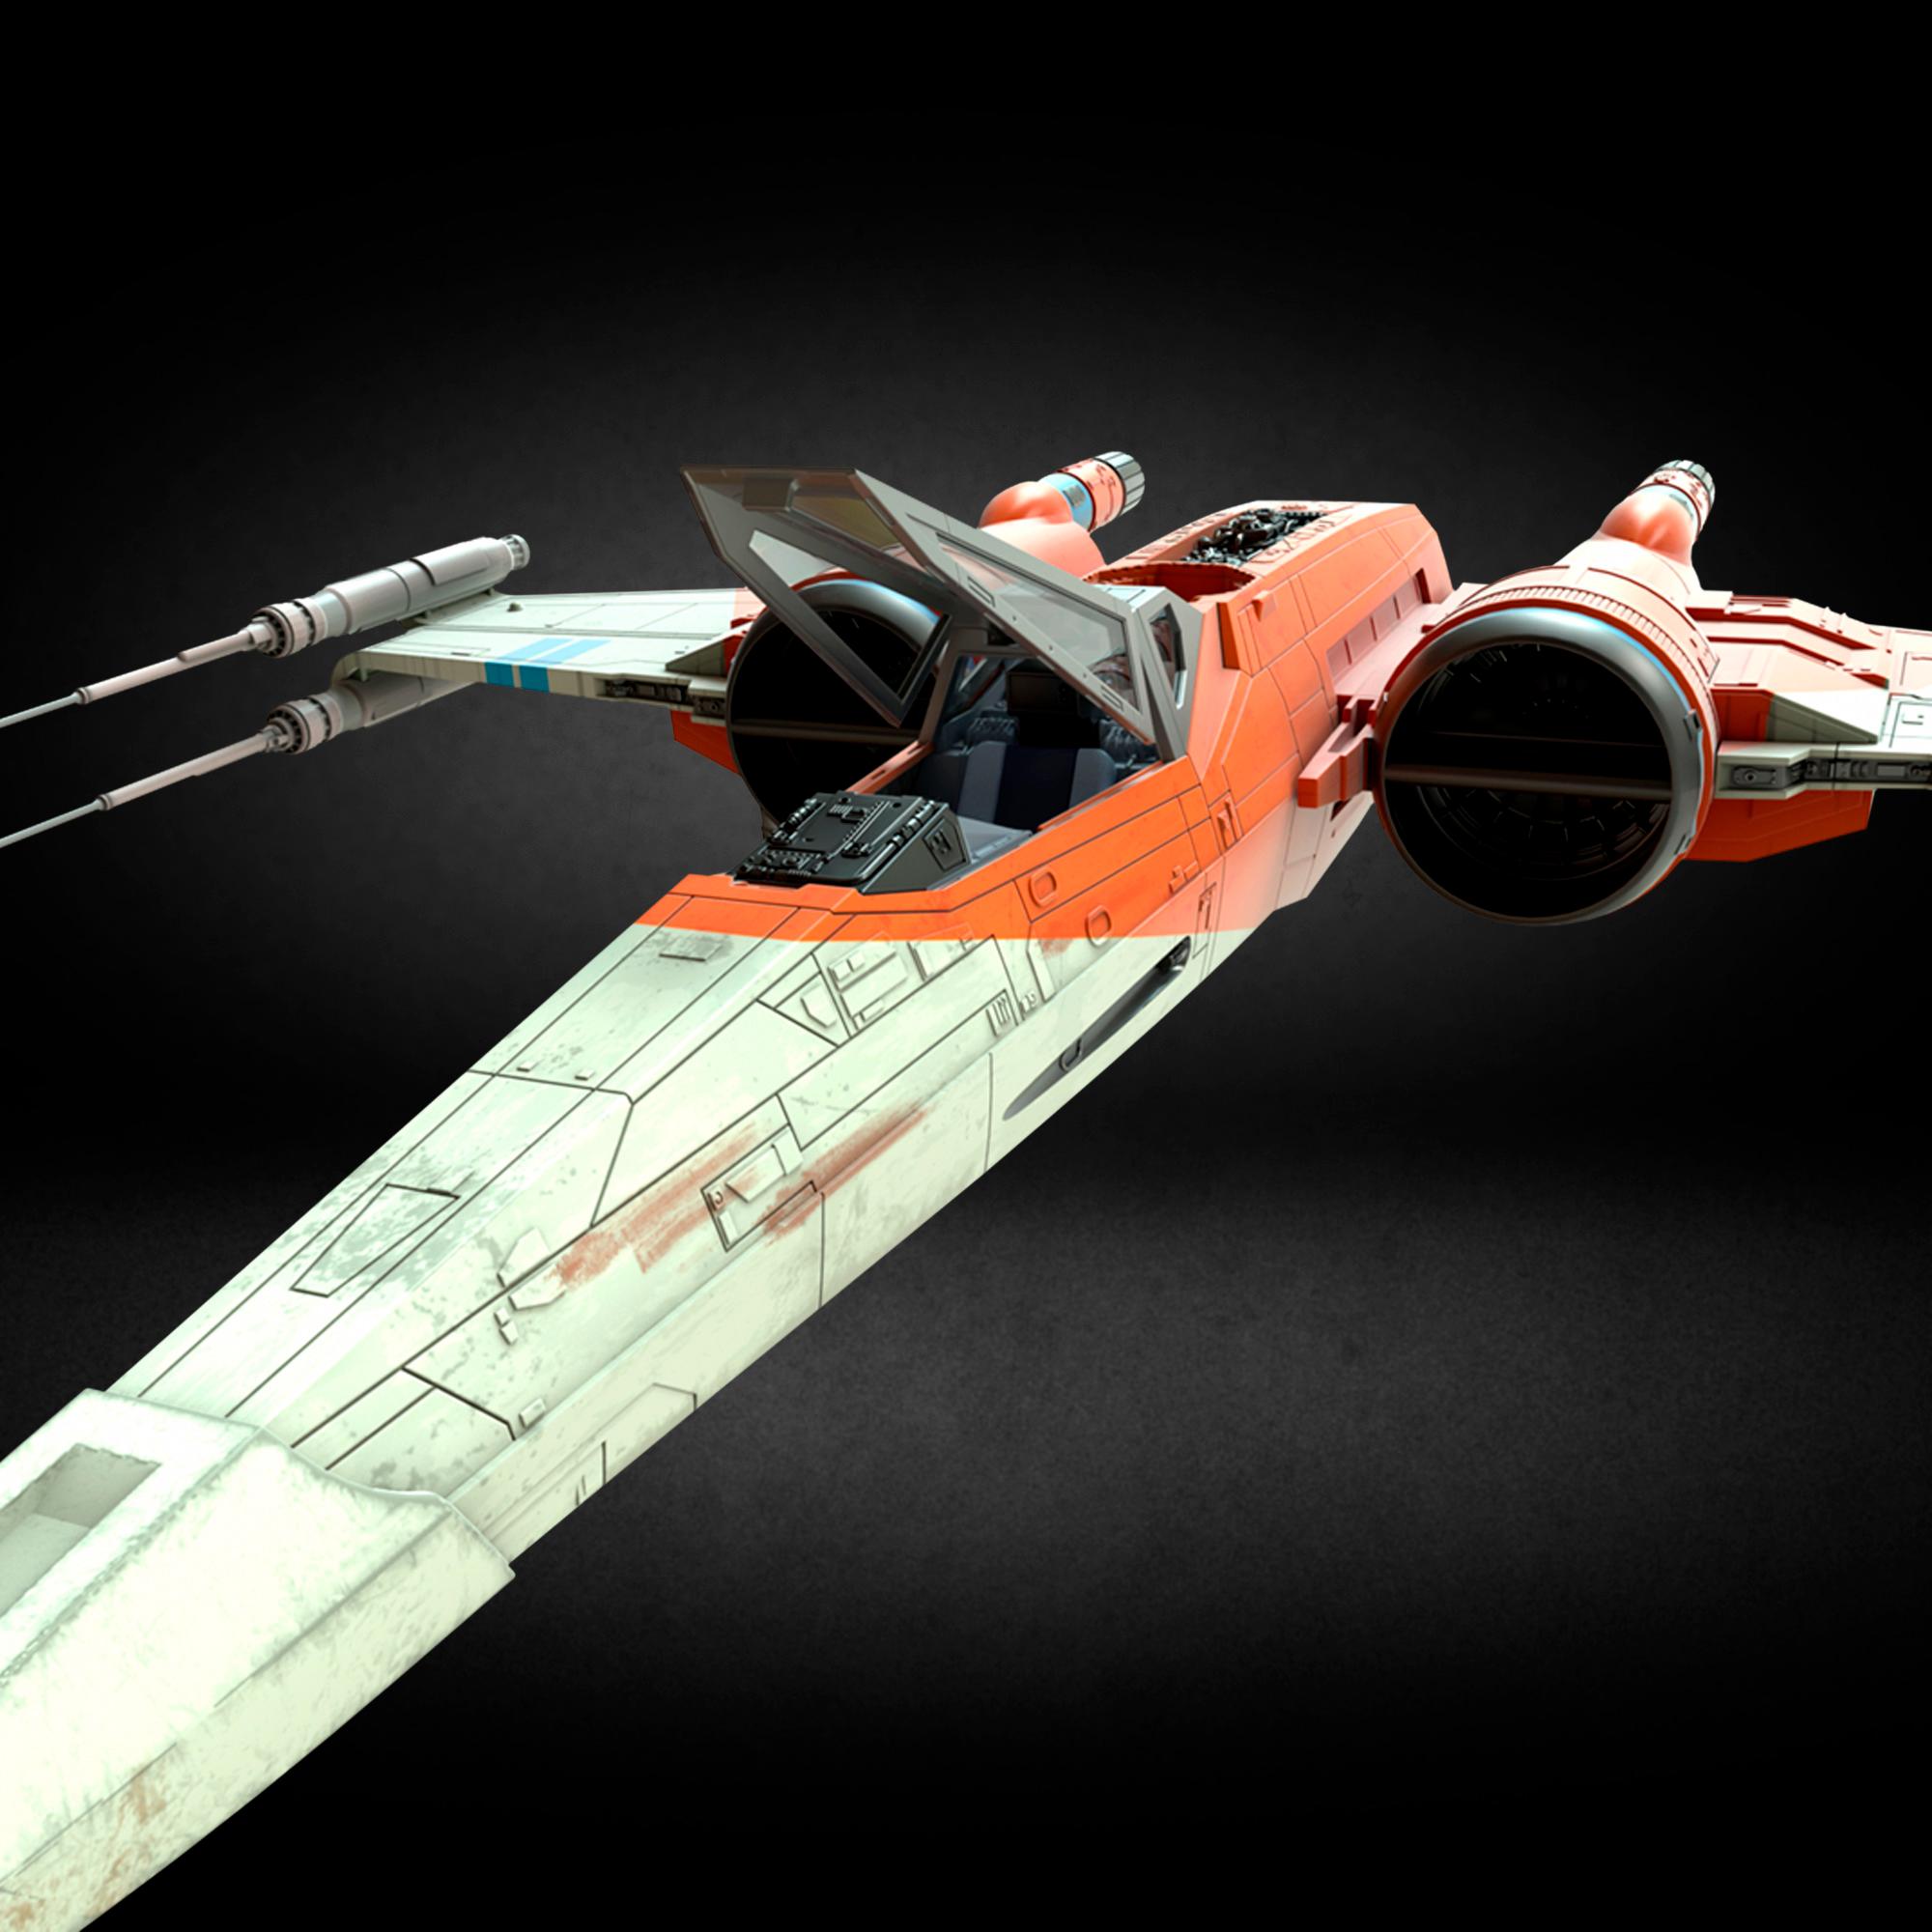 Disney Star Wars Galactic Heroes resistencia X-Wing Fighter con Poe Dameron Galeria 